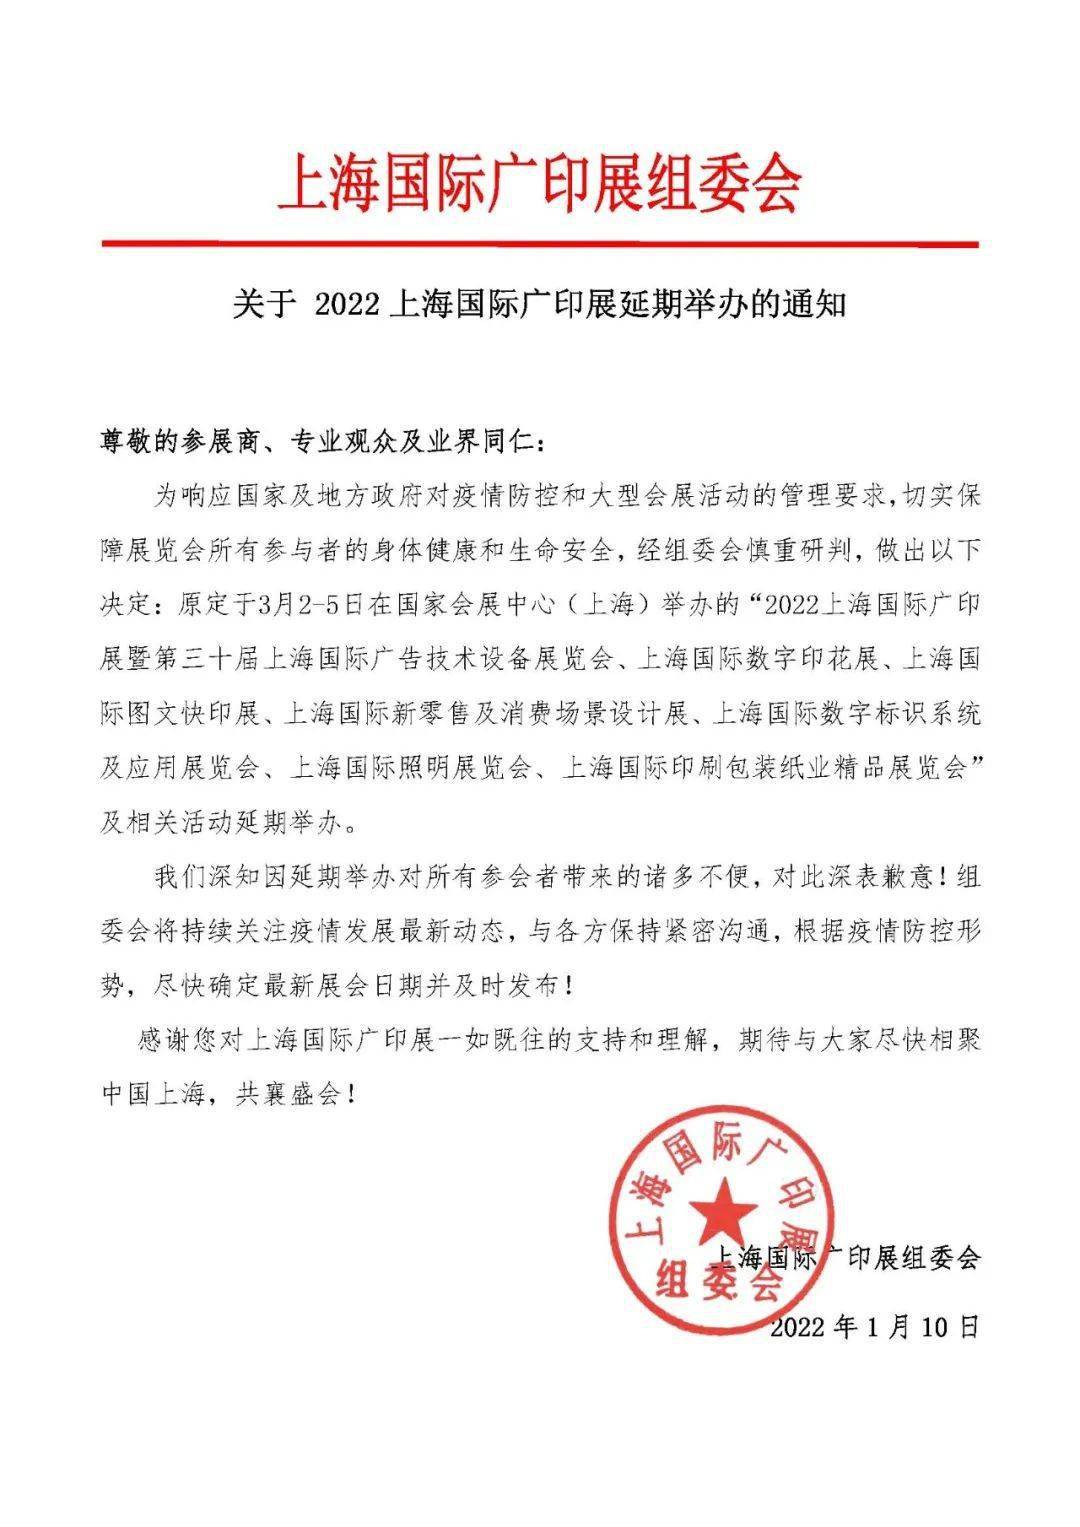 今日出入上海最新通知 上海二次封城最新消息